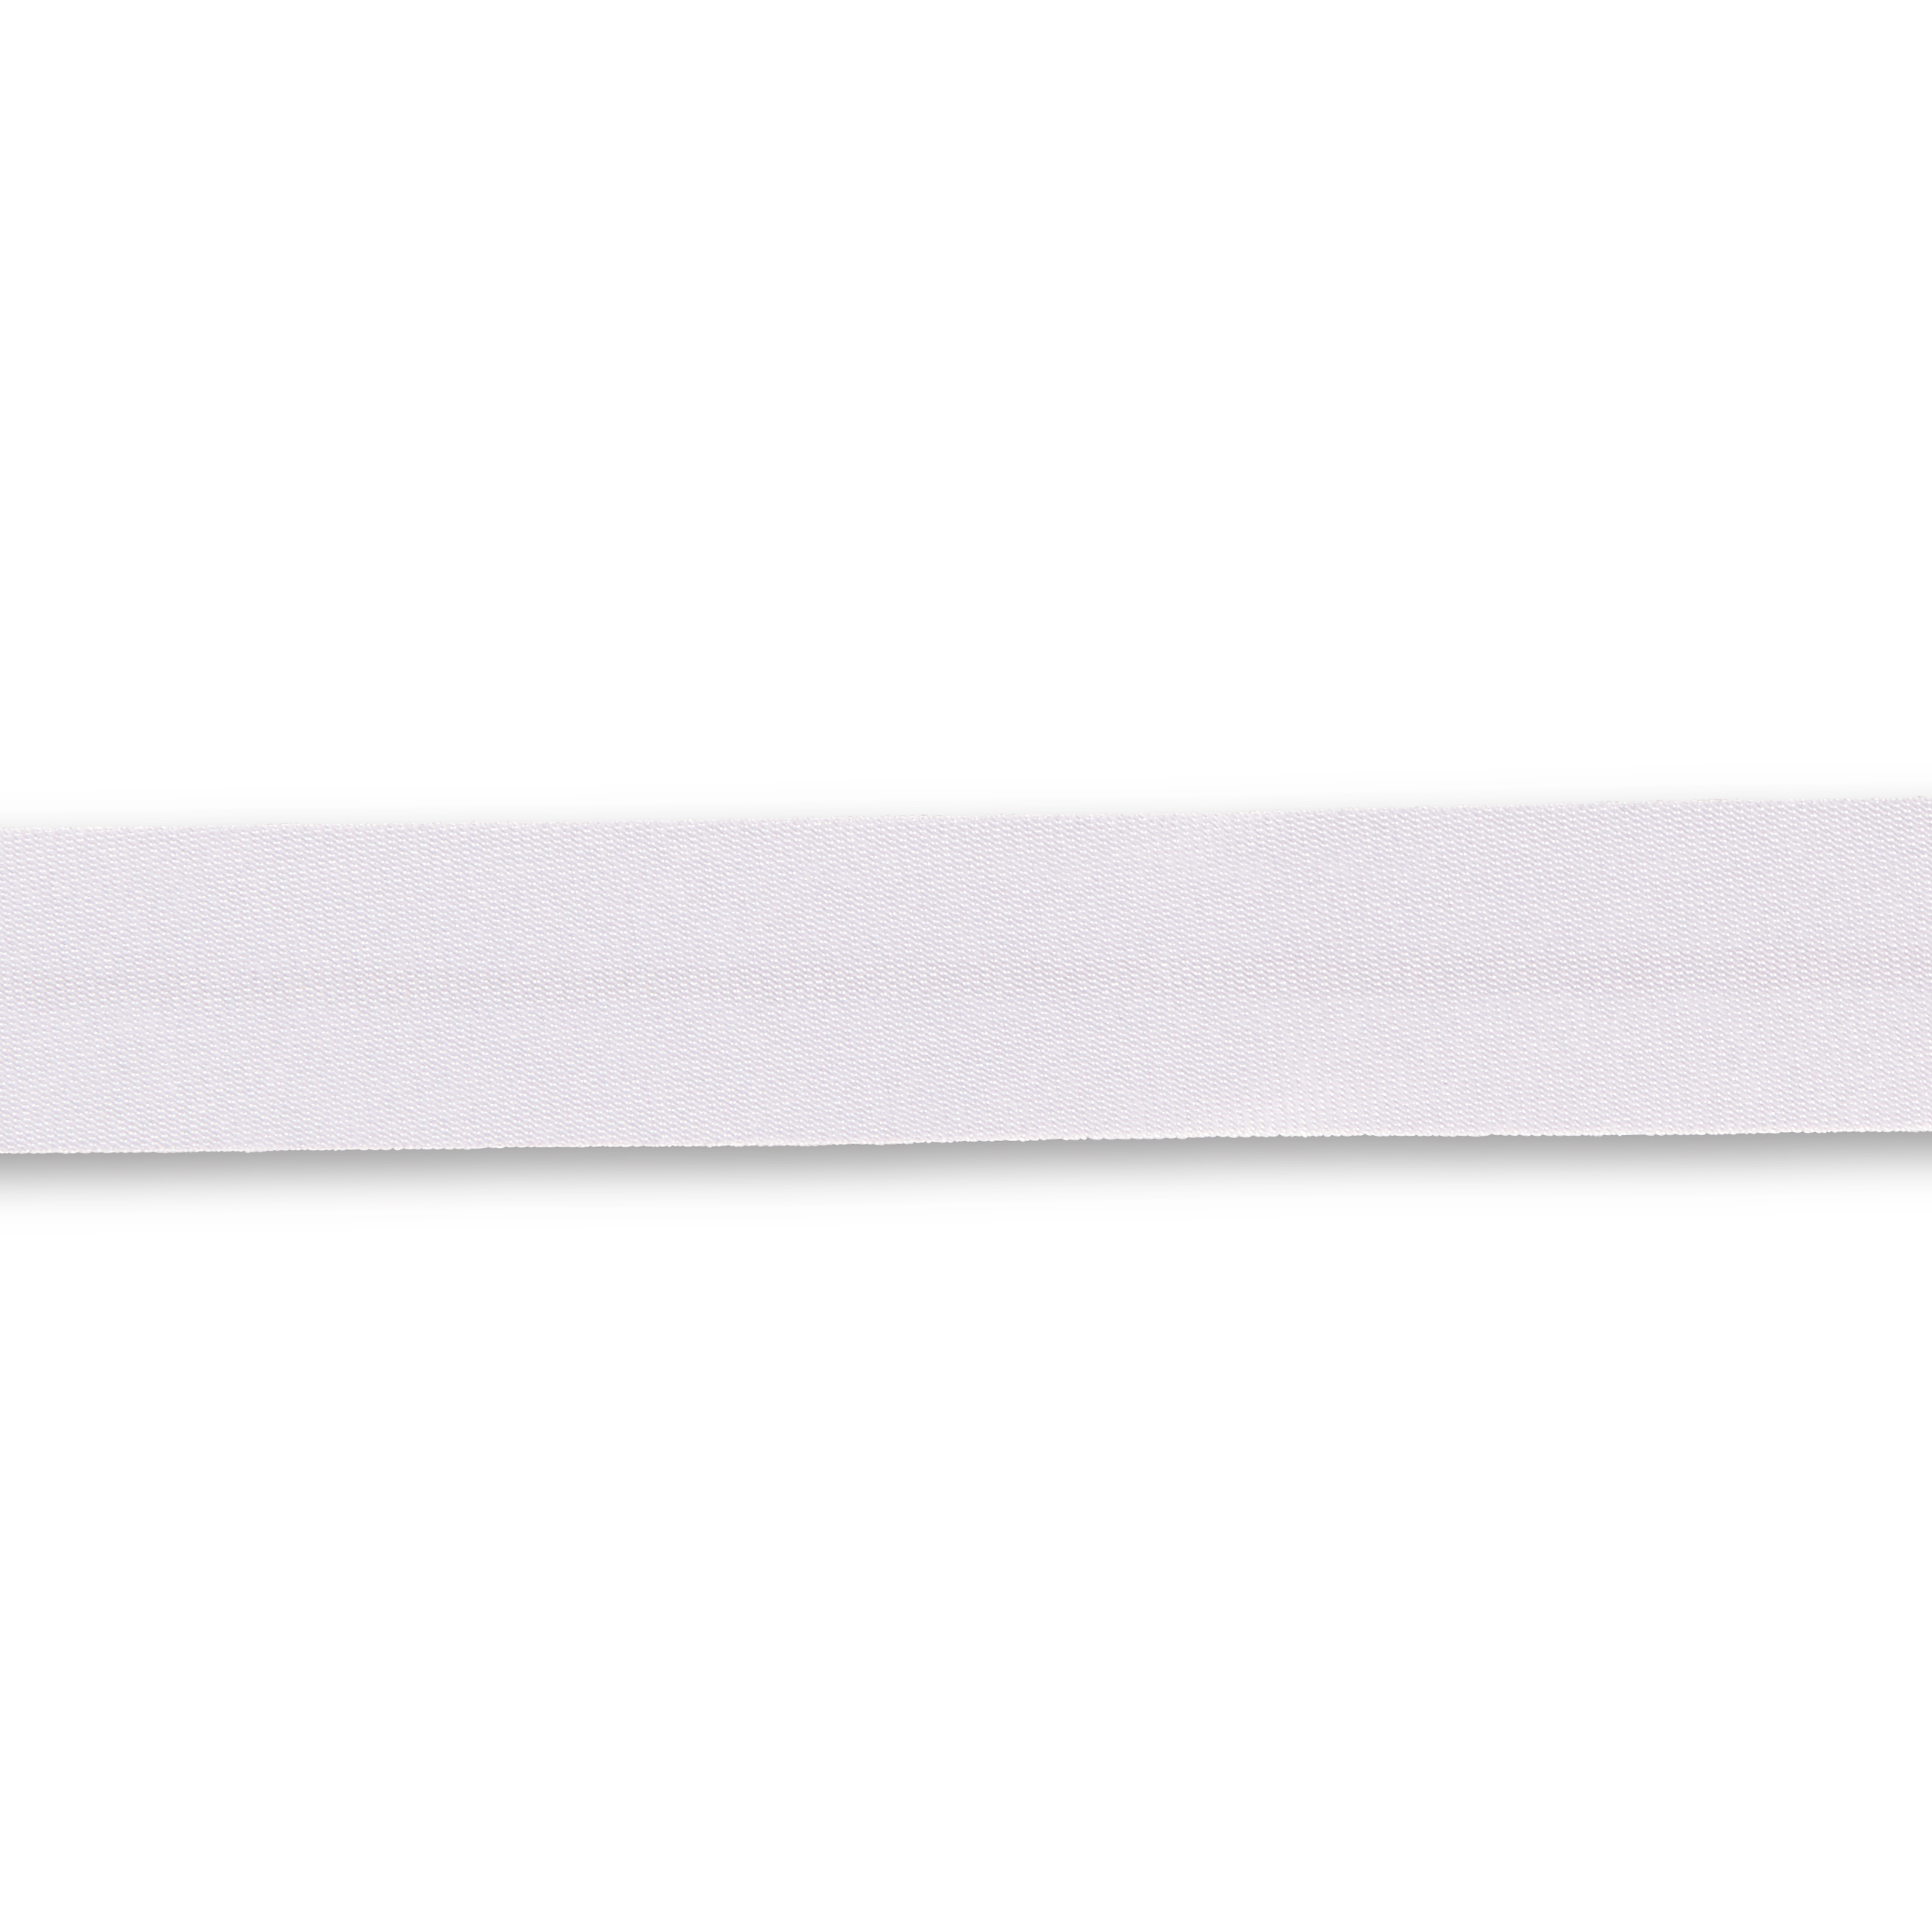 Schrägband Duchesse 40/20 mm weiß, Meterware, Einfassband, Satin-Schrägband  